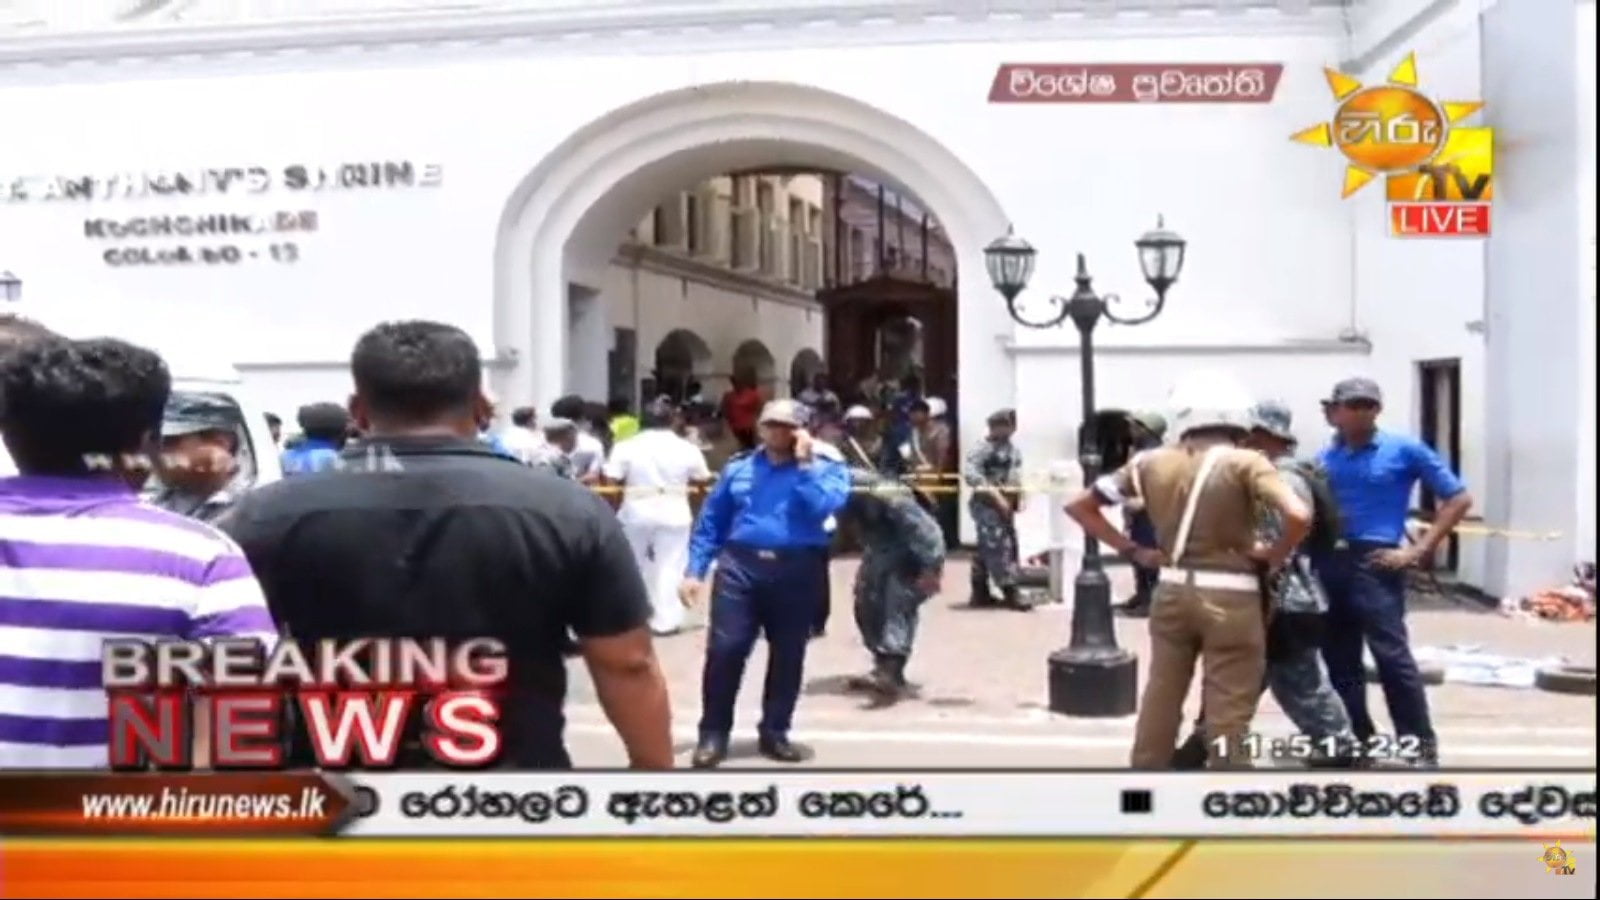 Atentado terrorista en Sri Lanka en iglesias y hoteles deja varios muertos